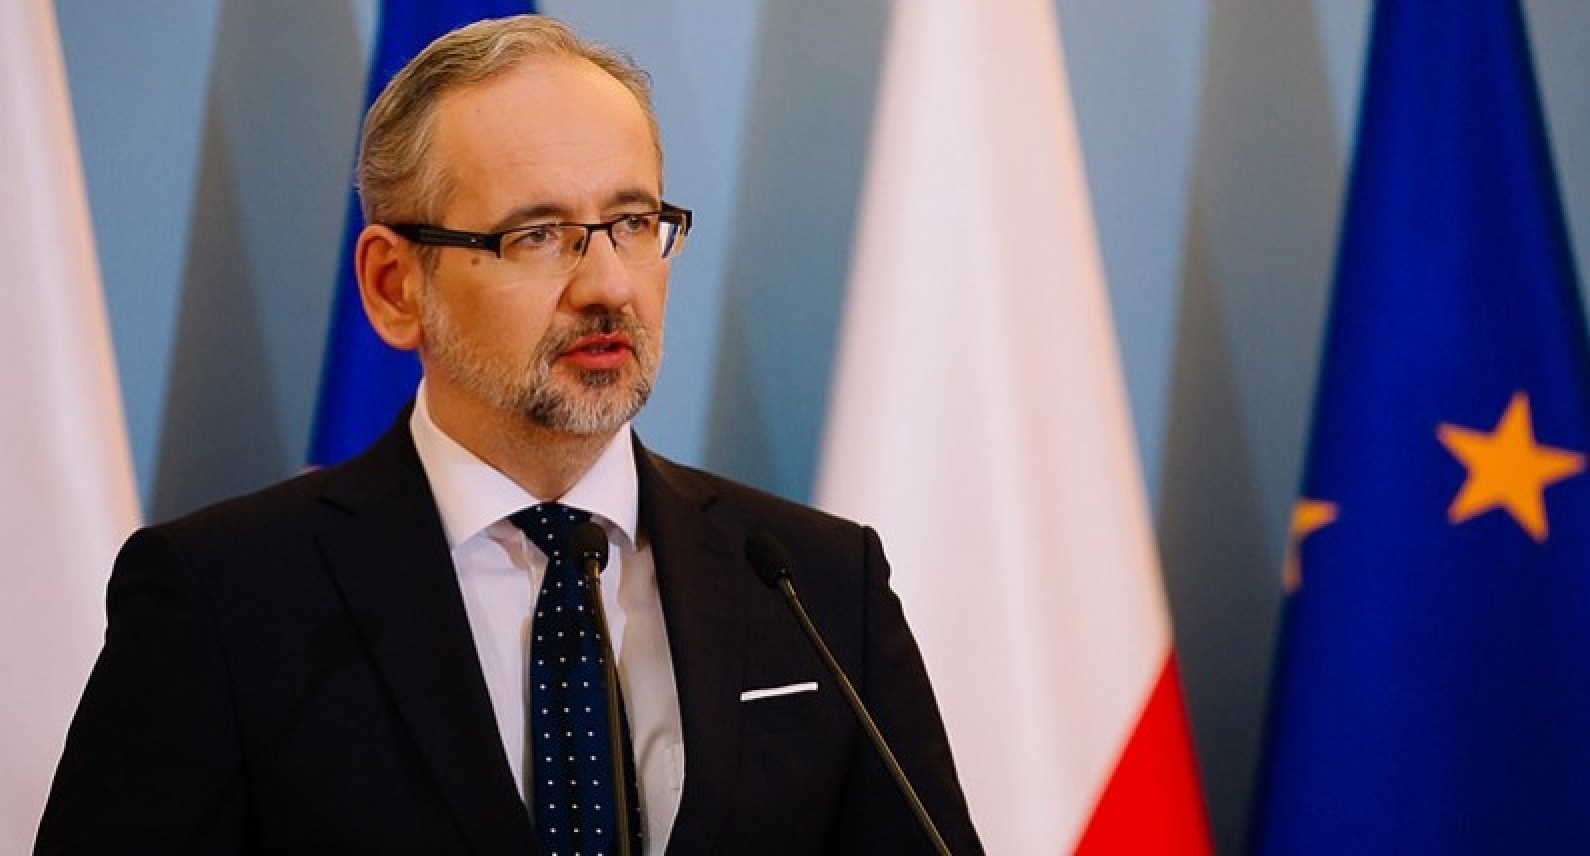 Polski rząd zamyka kolejne województwo: twardy lockdown na Pomorzu